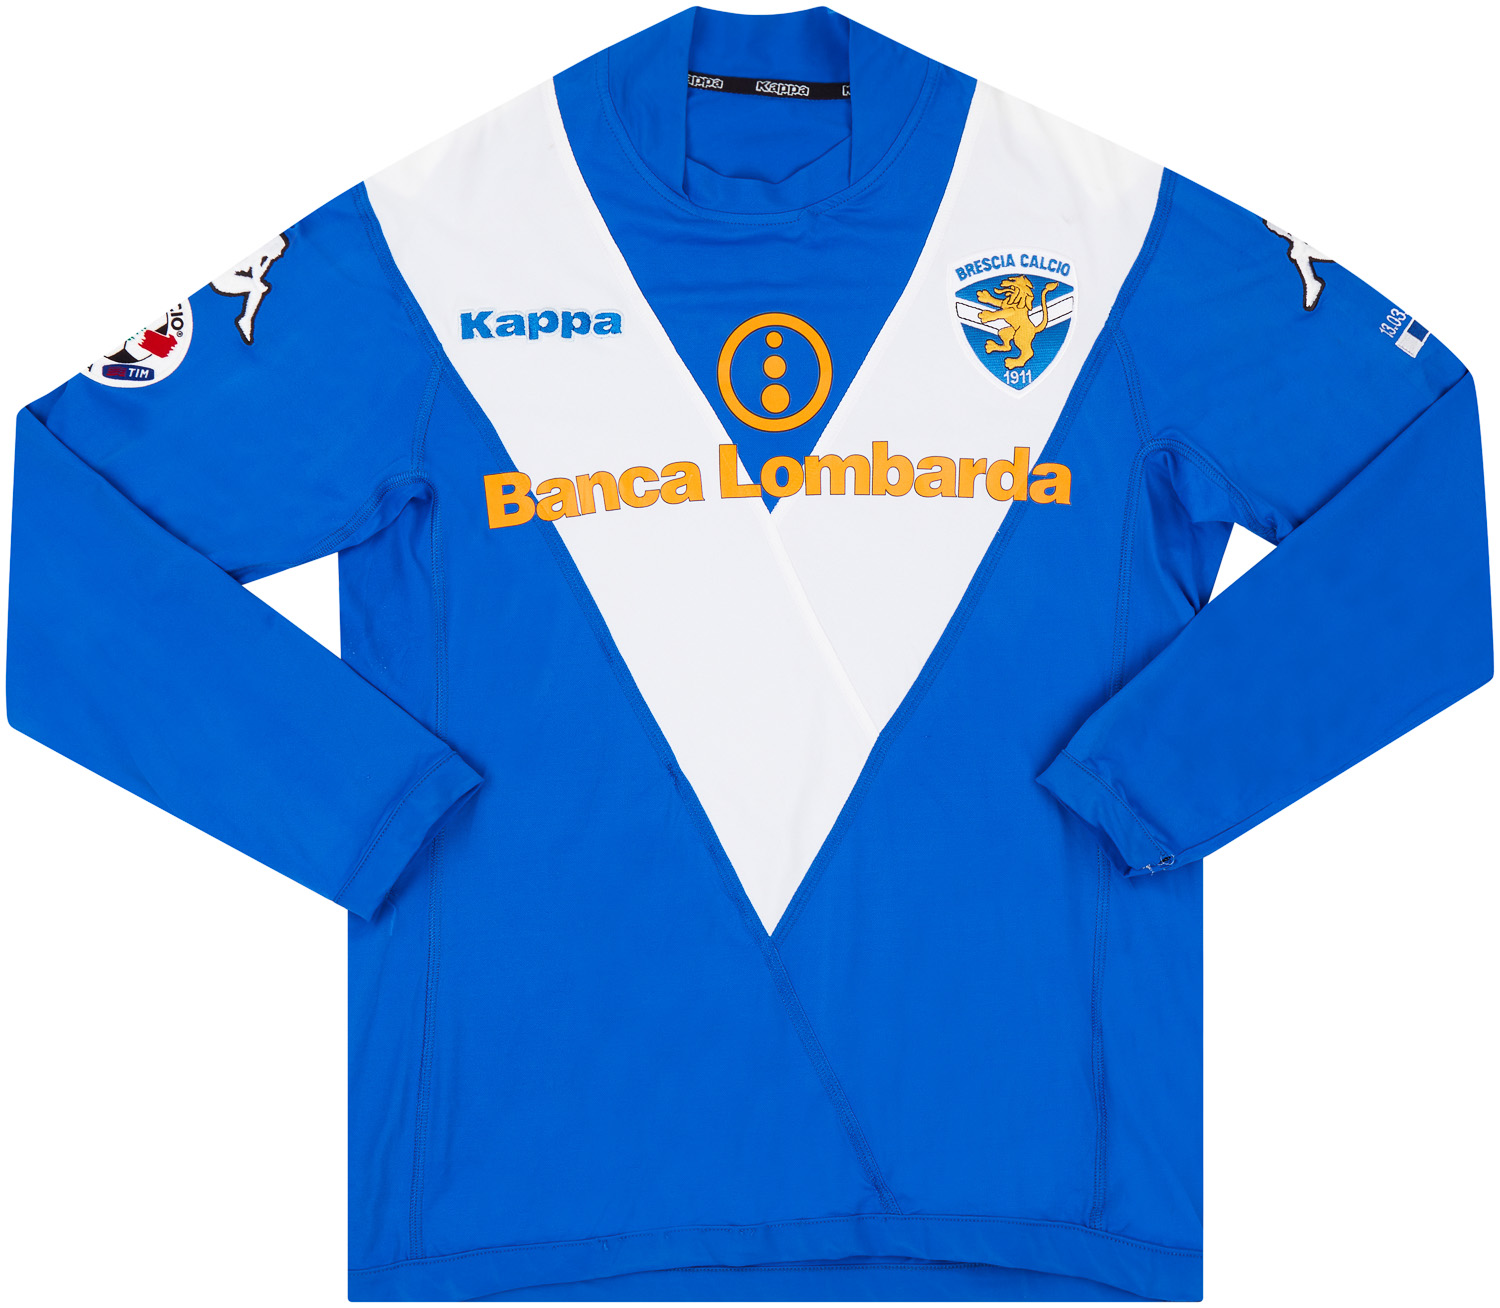 2004-05 Brescia Match Issue Home Shirt Dallamano #23 (v Livorno)